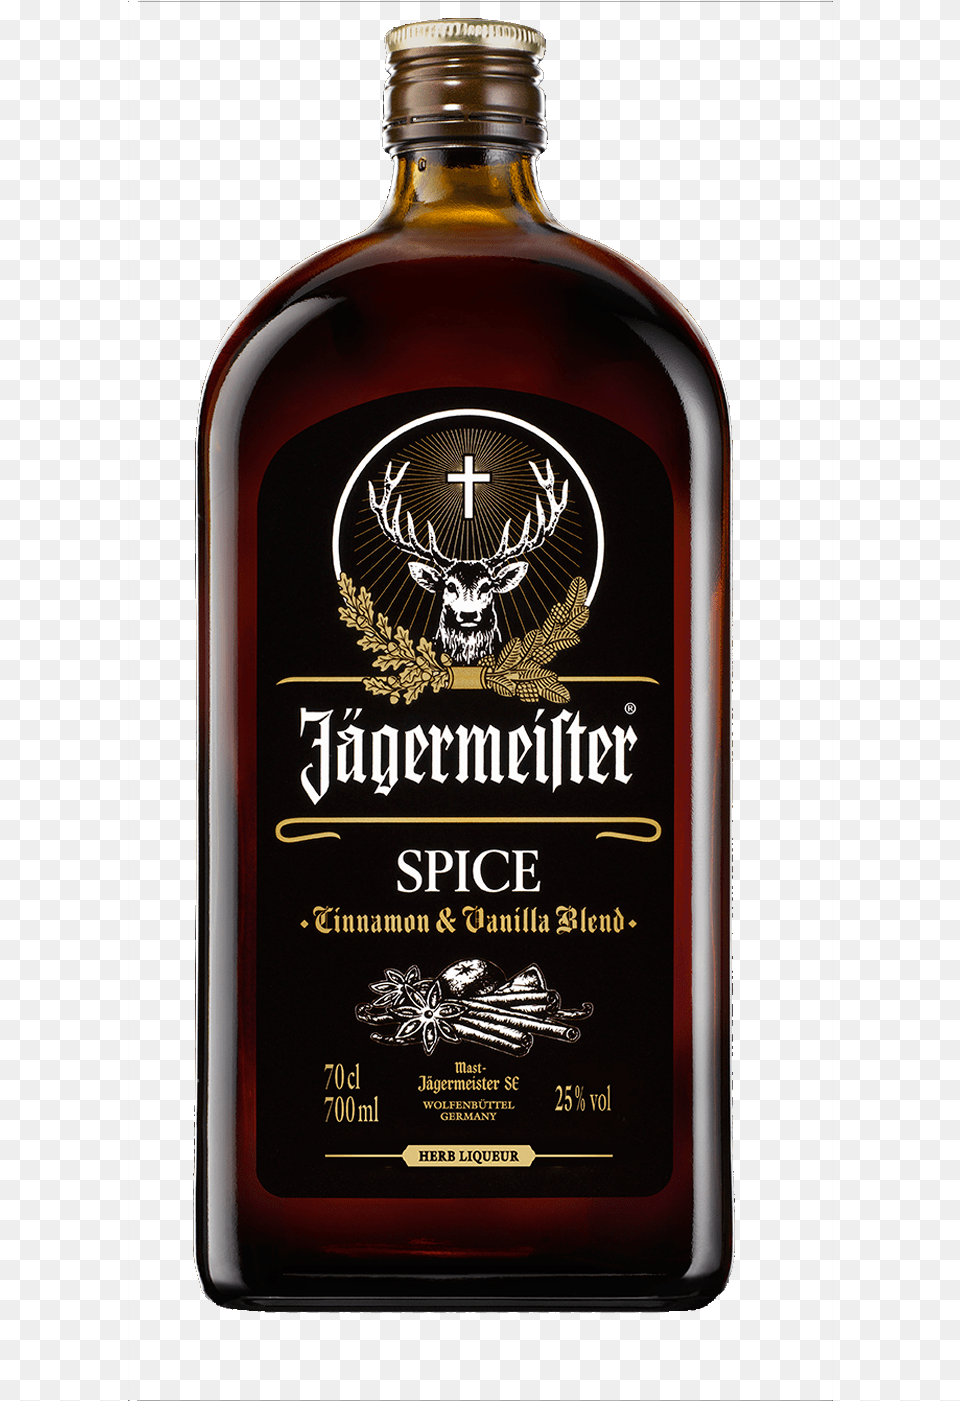 Jagermeister Spice, Alcohol, Beverage, Liquor, Bottle Png Image